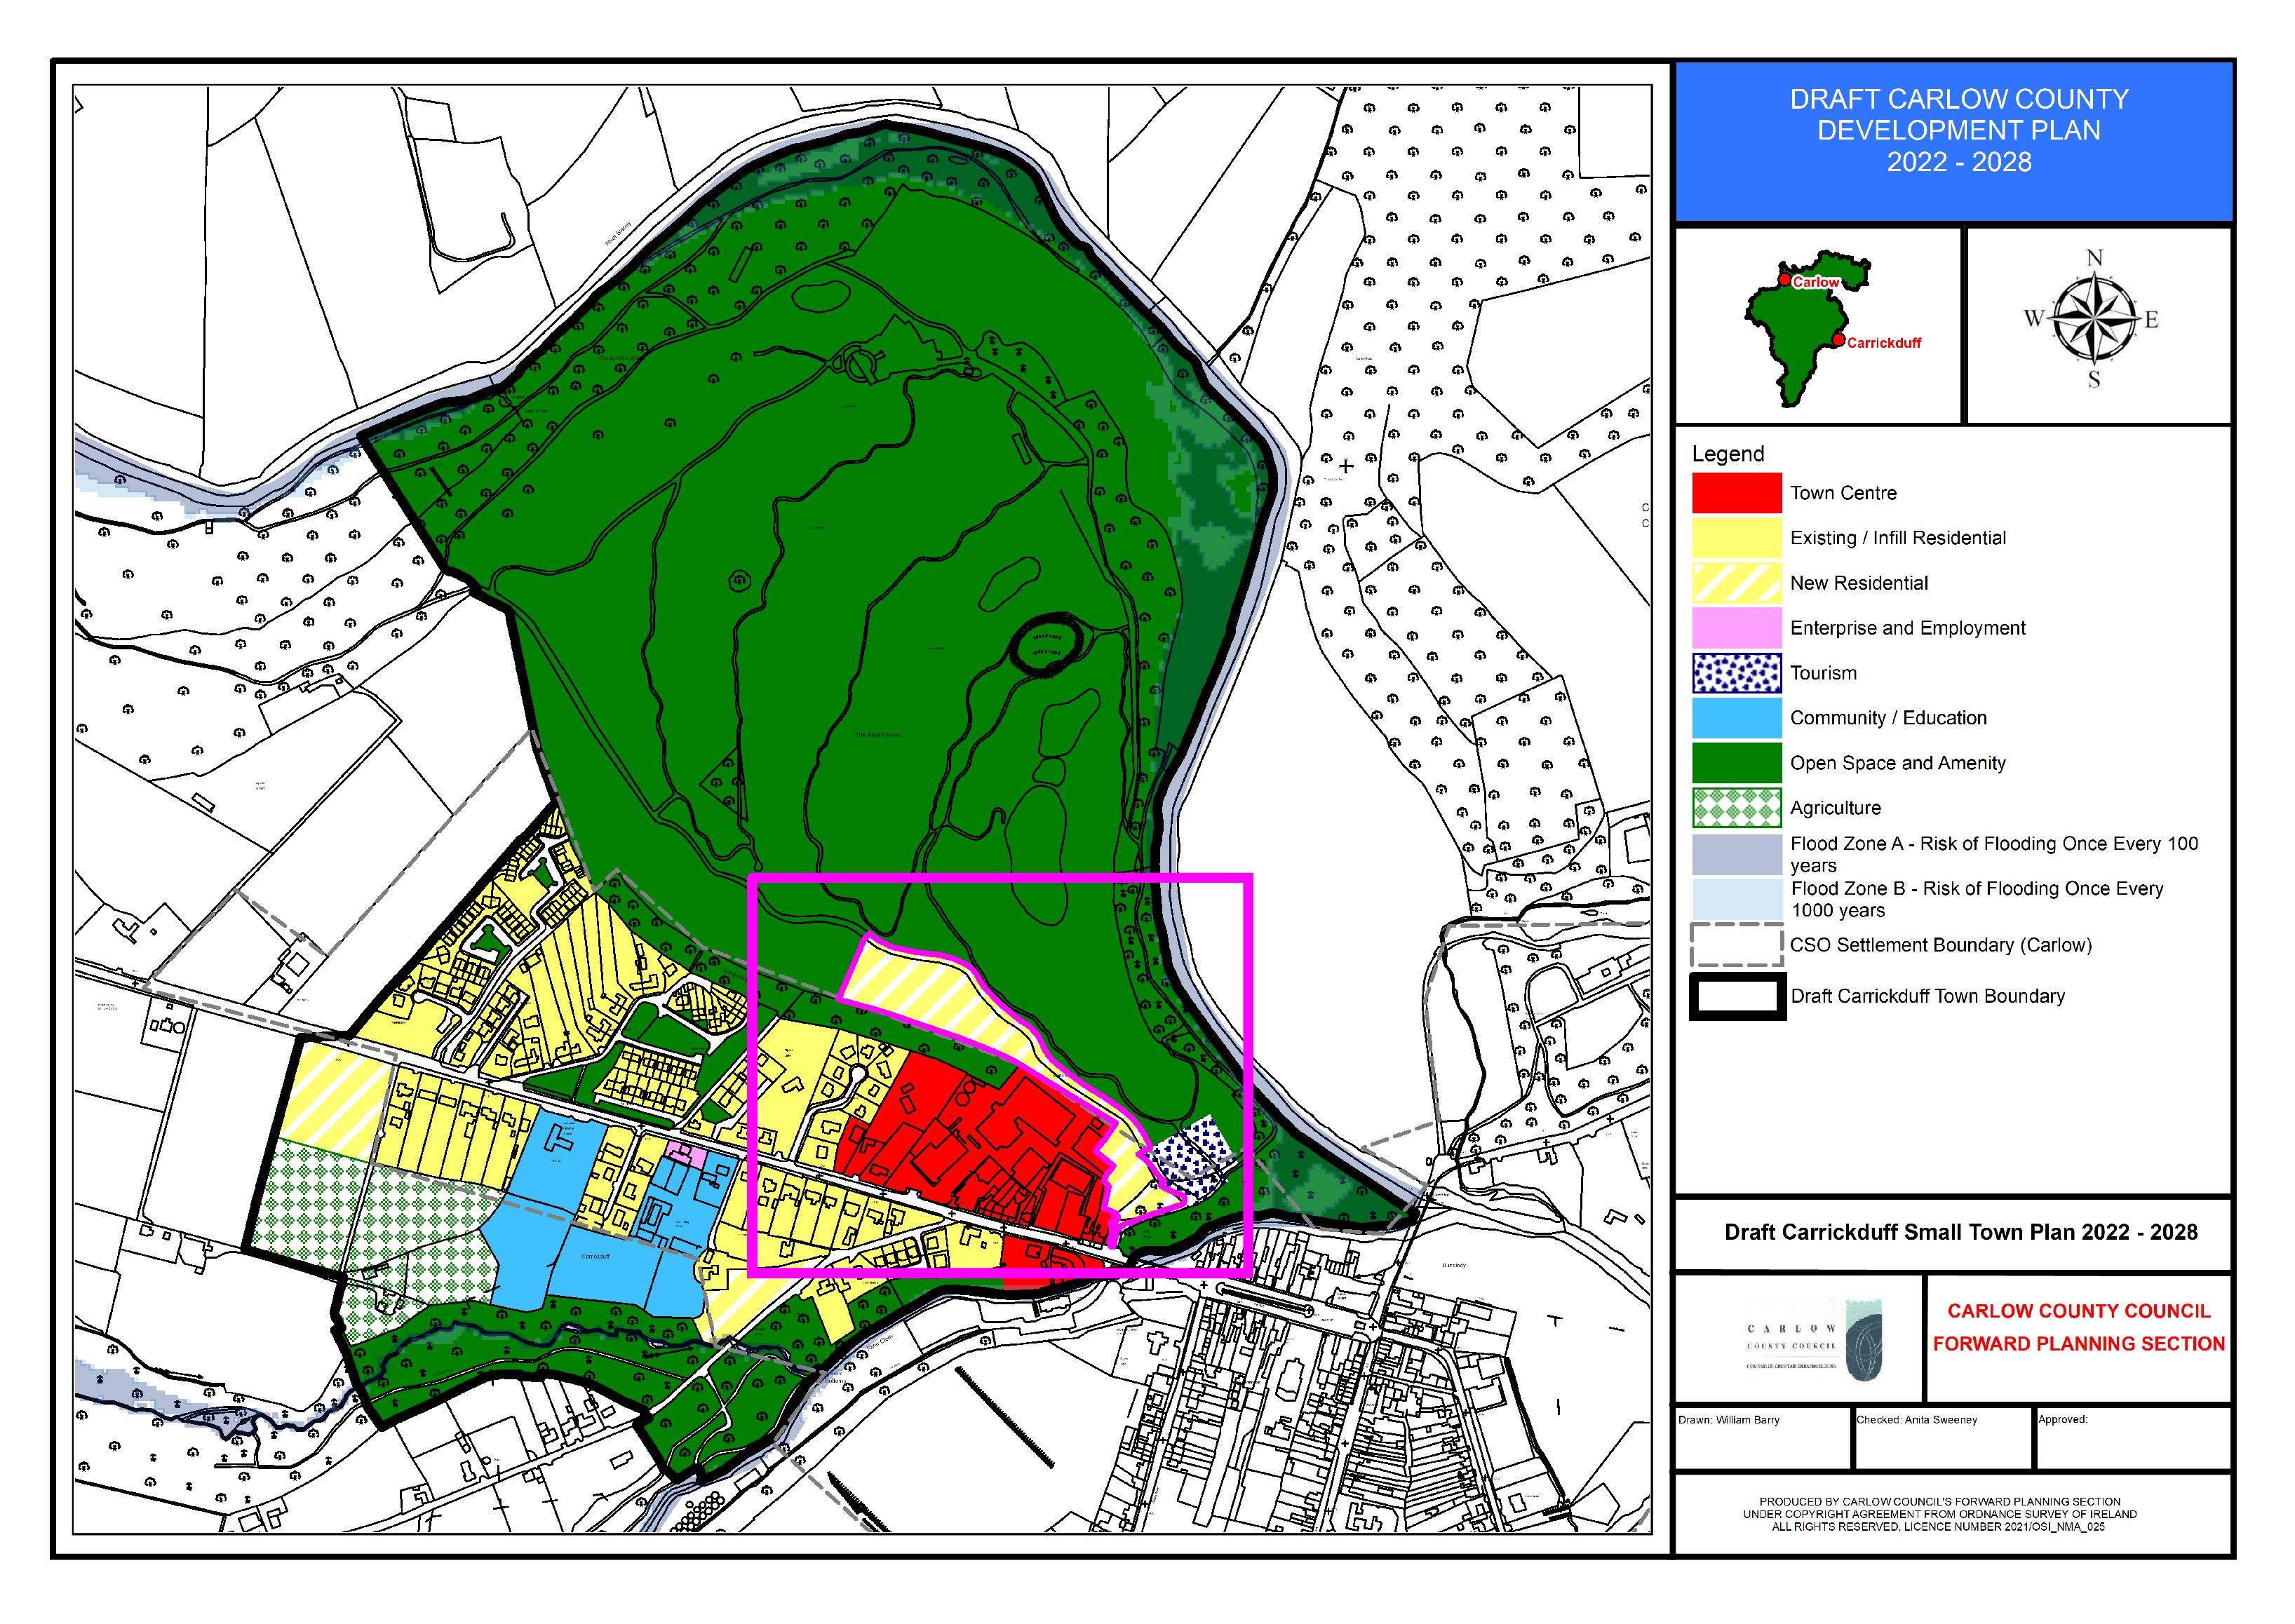 Draft Carrickduff Small Town Plan 2022-2023